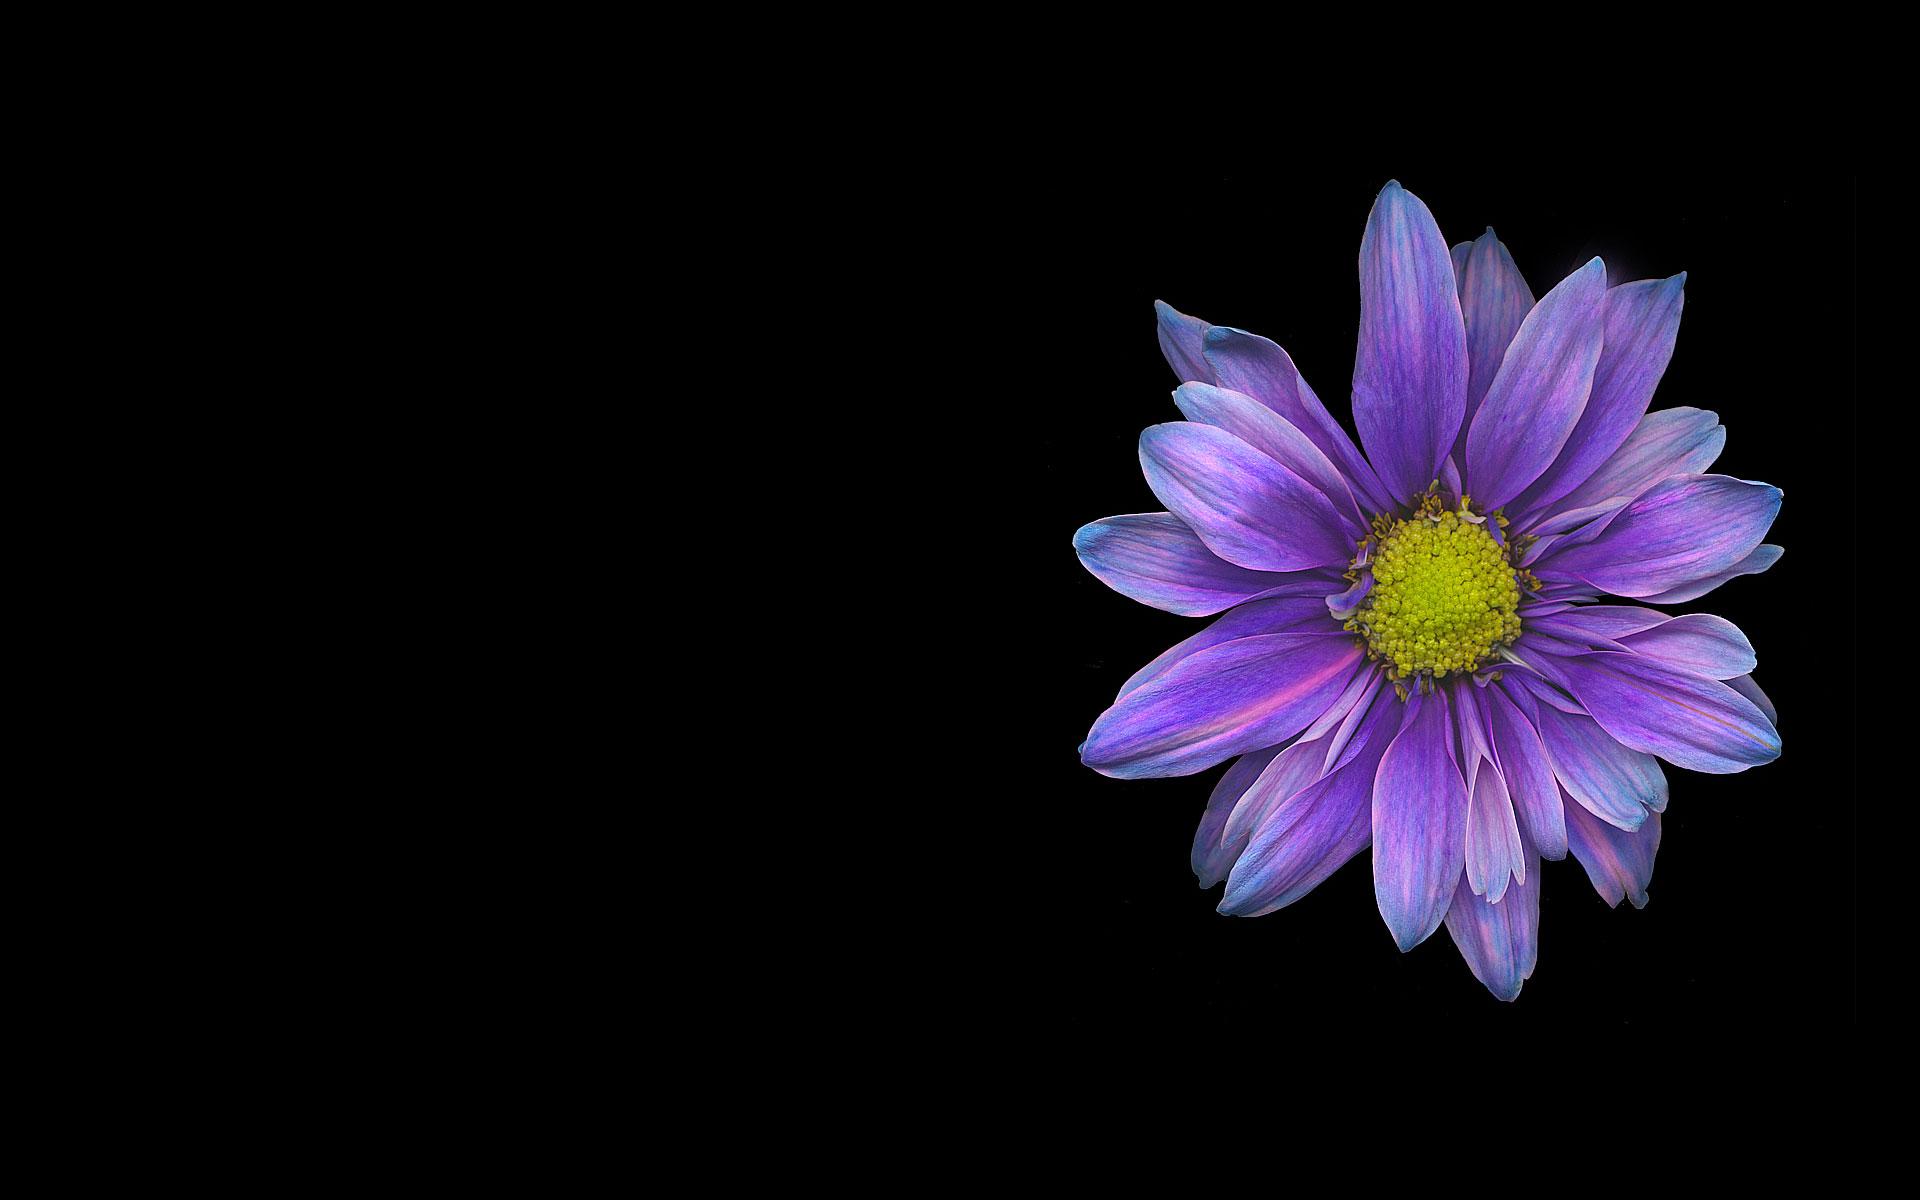 purple daisy flower